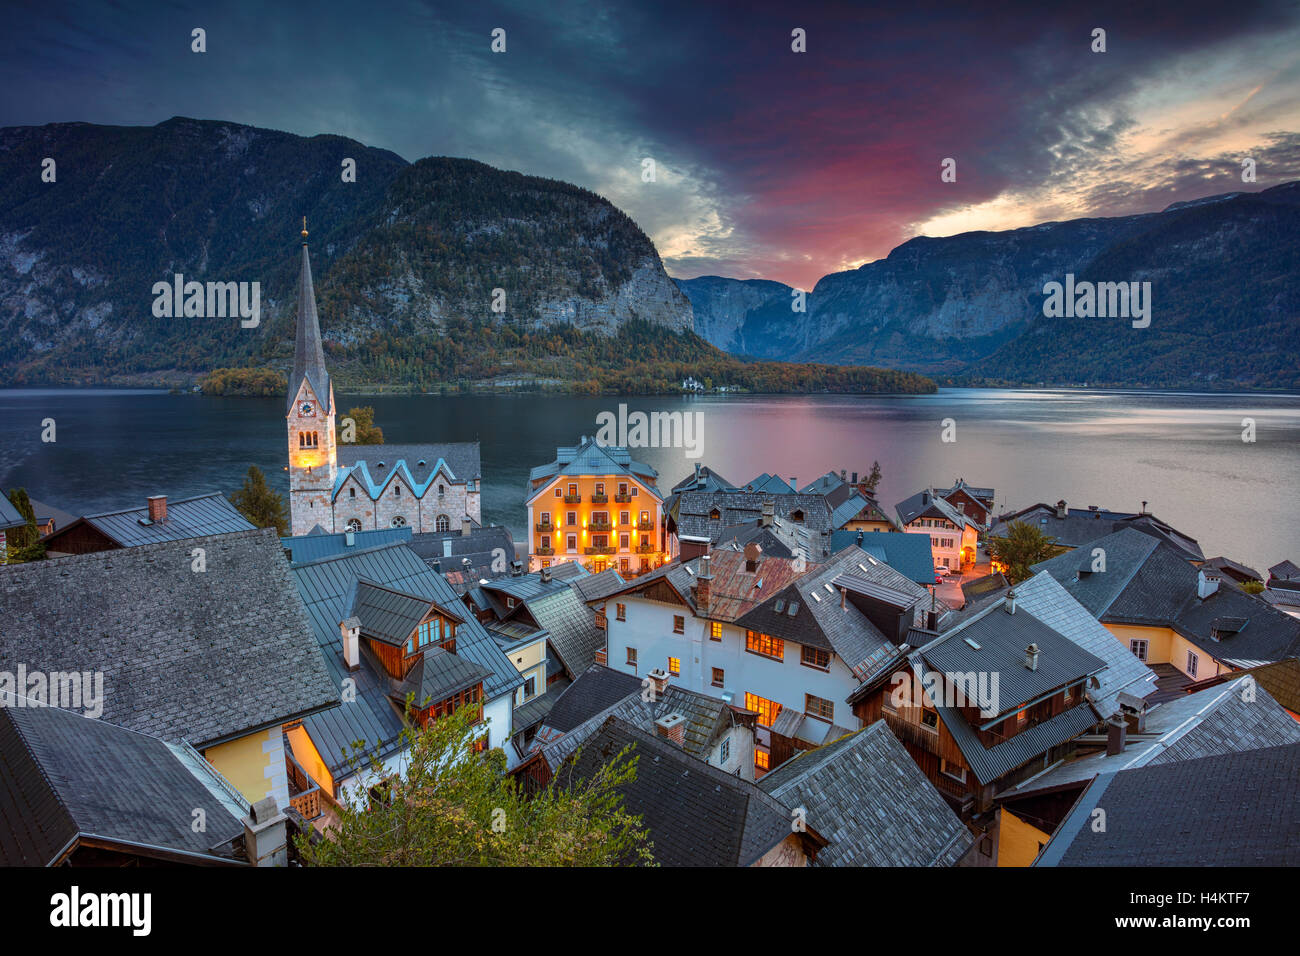 Hallstatt, Autriche. Image du célèbre village alpin de Hallstatt au cours de l'automne le lever du soleil. Banque D'Images